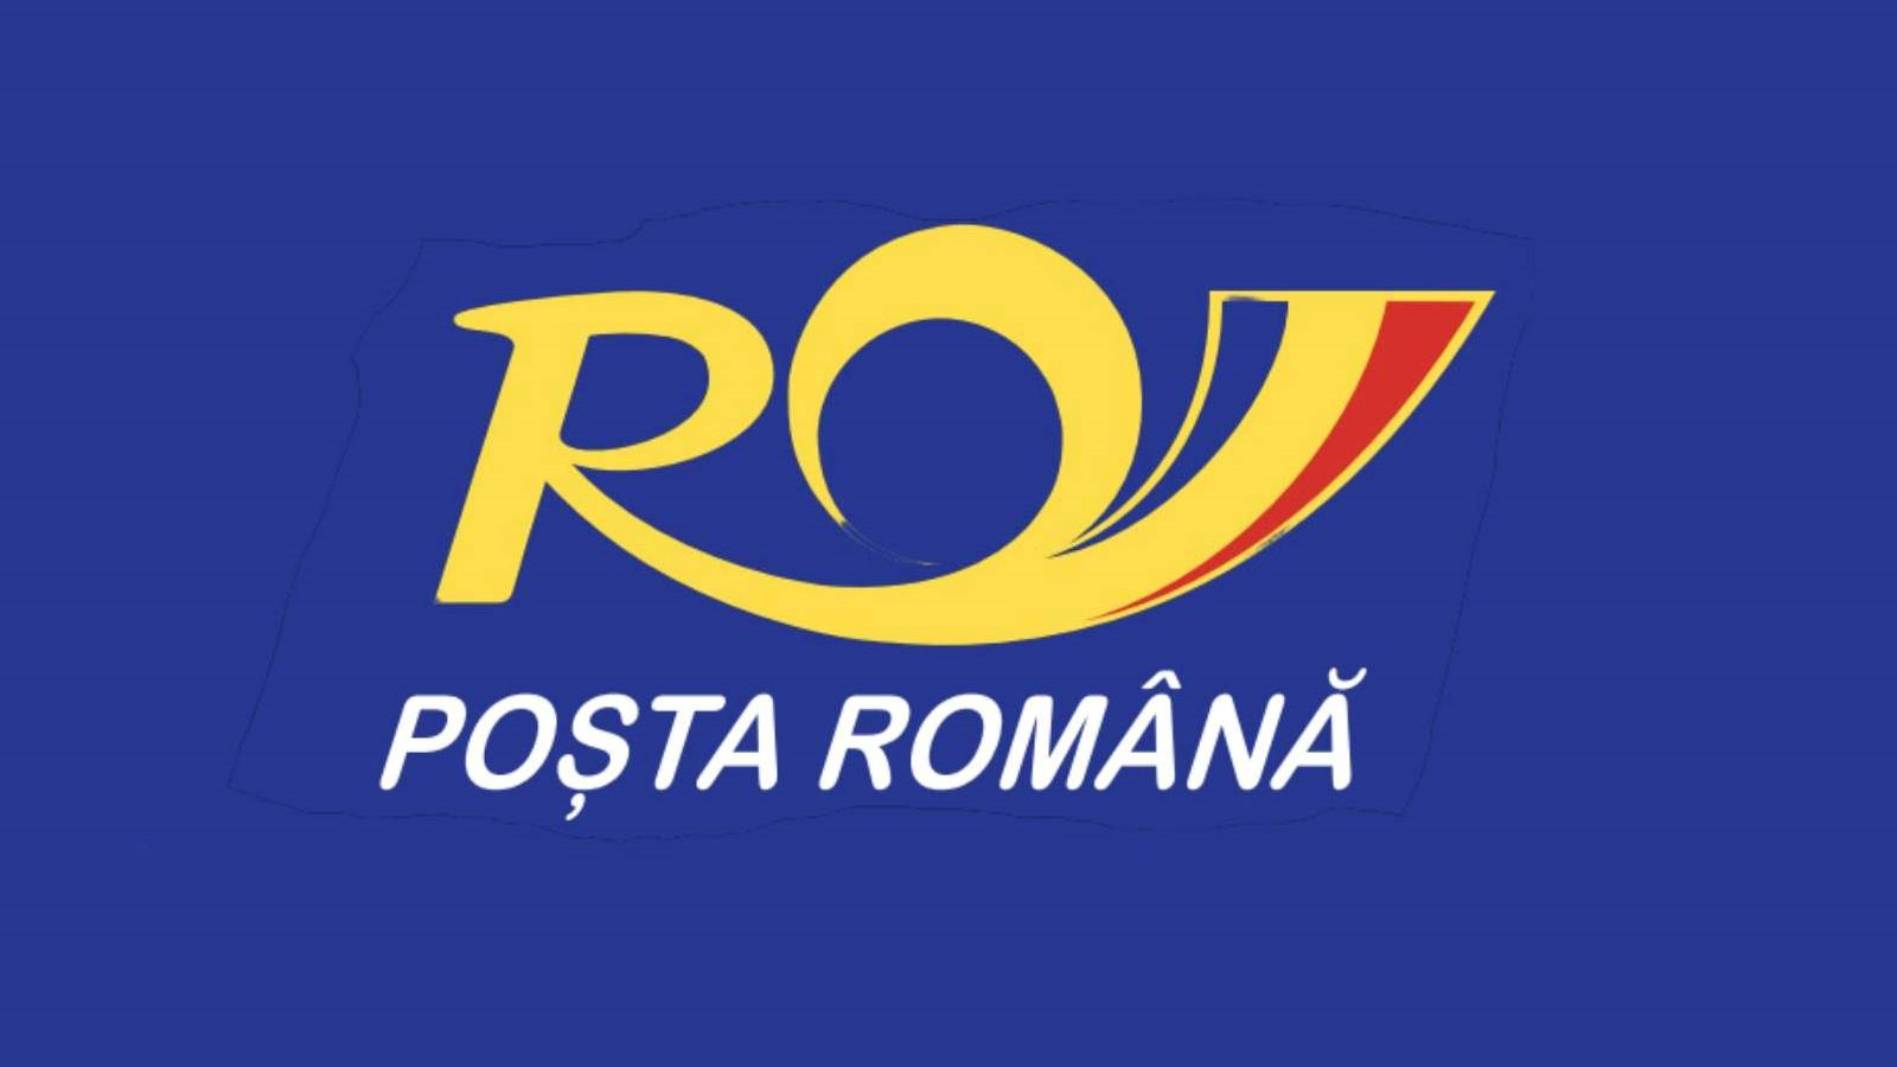 Roemeense post sluit subeenheden in heel Roemenië Wanneer waarom?